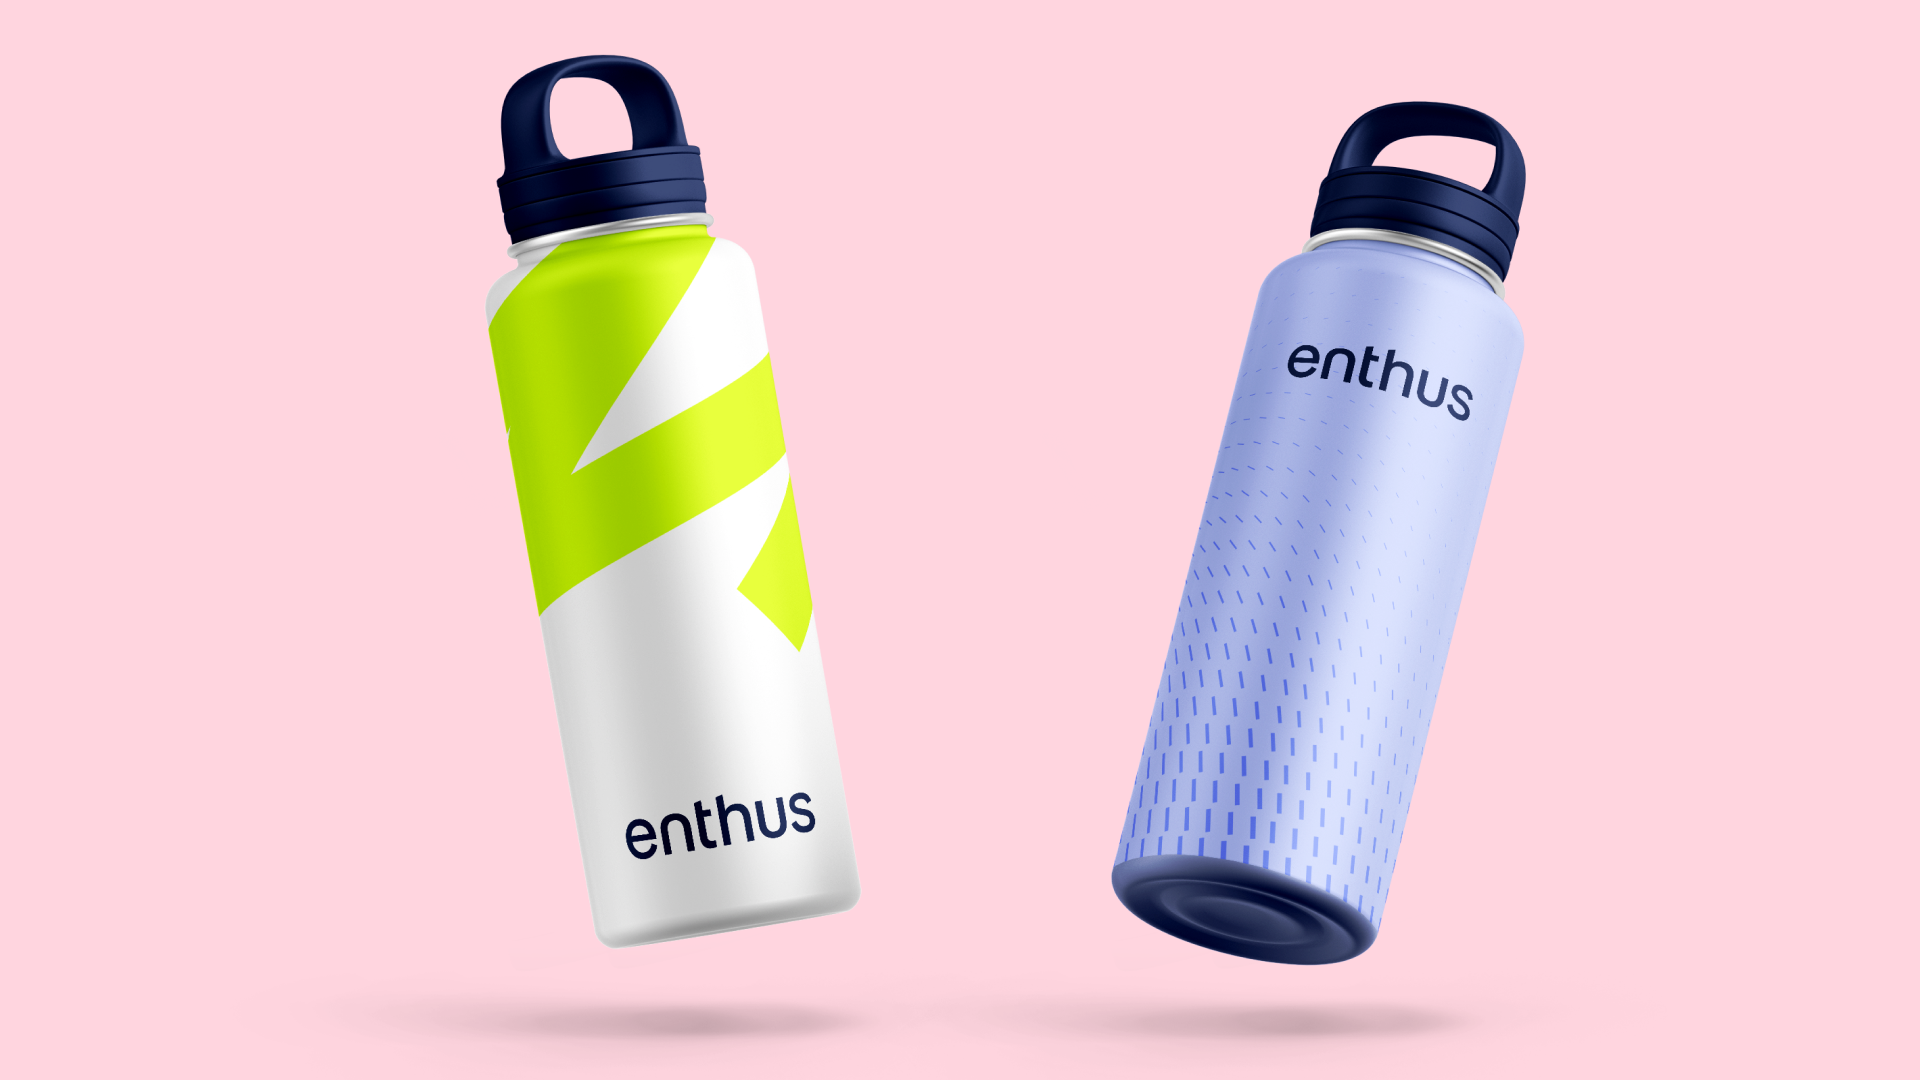 Enthus water bottles